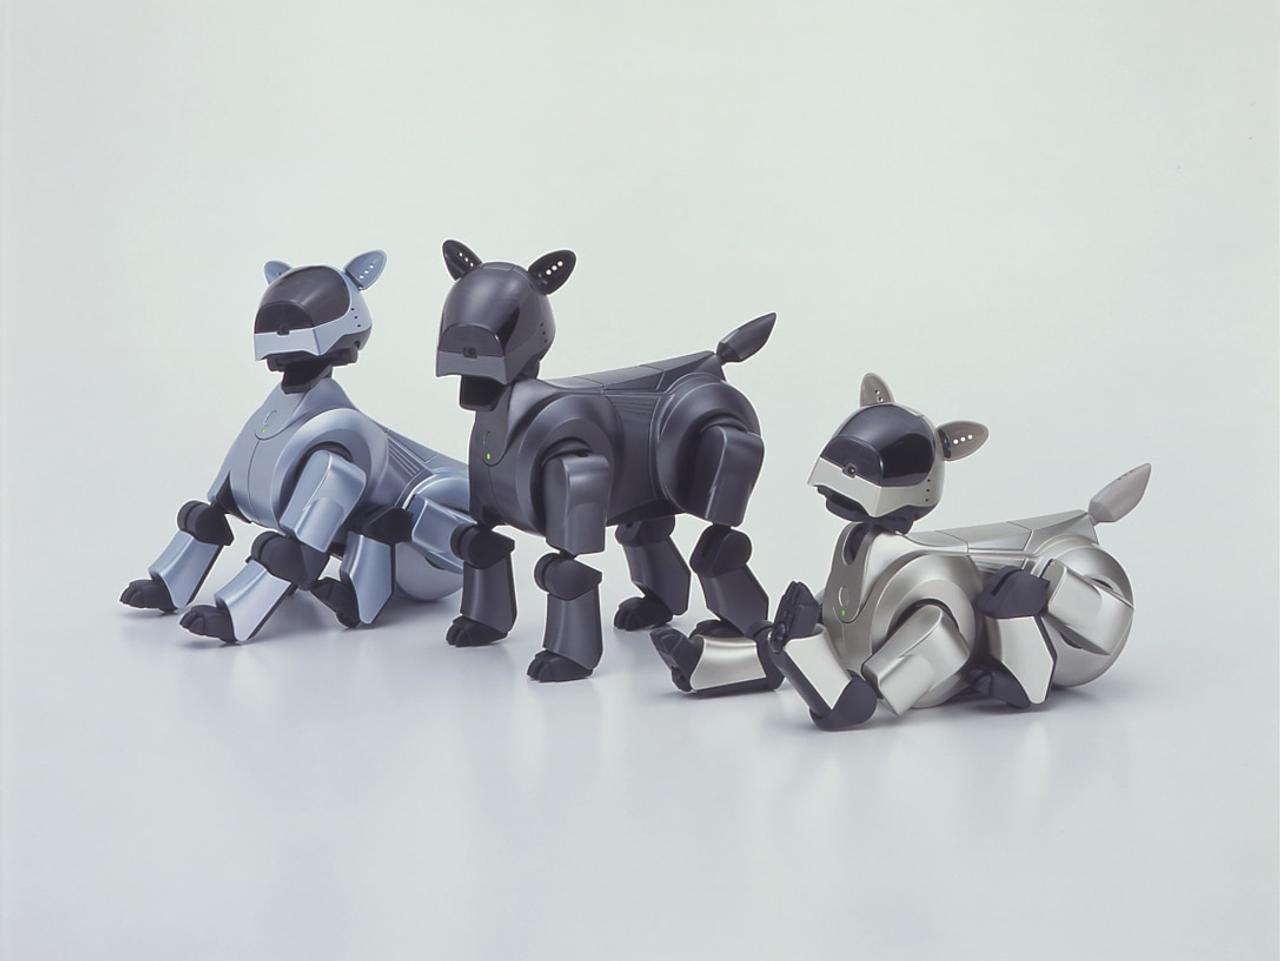 ソニー｢AIBO｣系譜の新しいイヌ型ロボット、11月に発表か!?